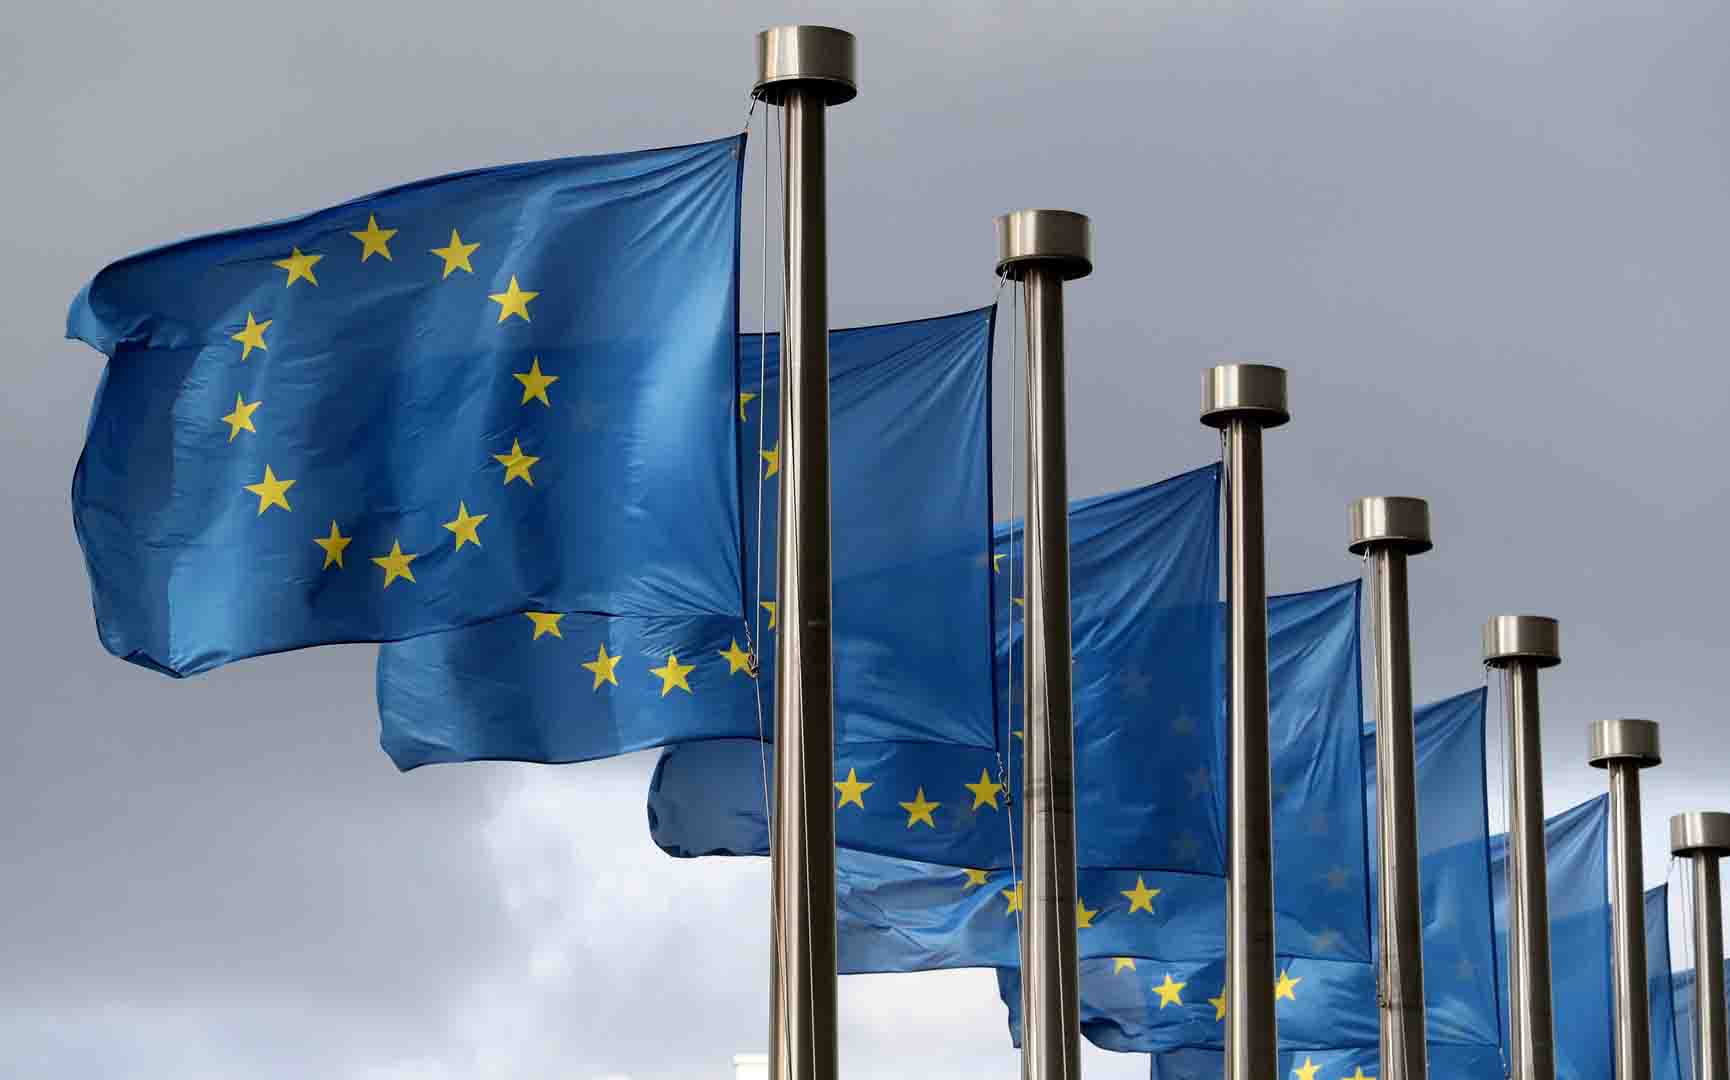 المفوضية الأوروبية تُرحب باتفاق سياسي لتعزيز أداء الطاقة في المباني داخل الدول الأعضاء